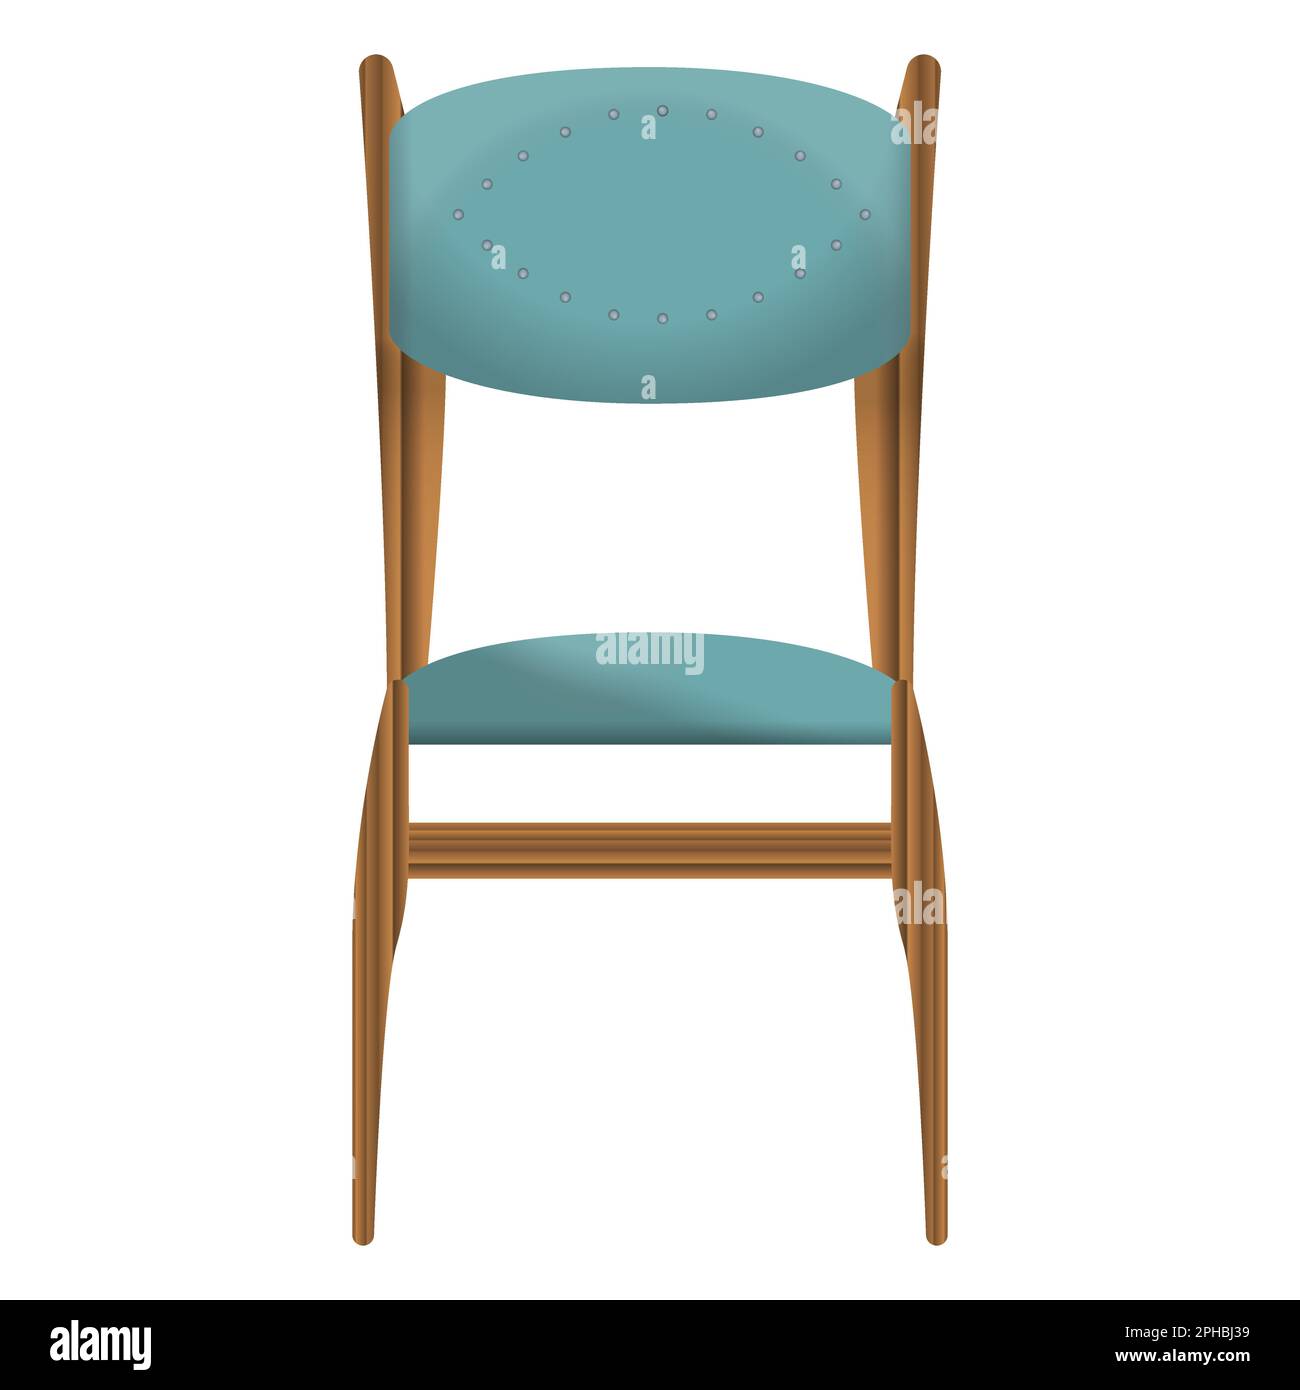 Chaise en bois sombre vue de face dans un style réaliste. Siège turquoise. Décoration de mobilier en bois. Illustration vectorielle colorée sur fond blanc. Illustration de Vecteur